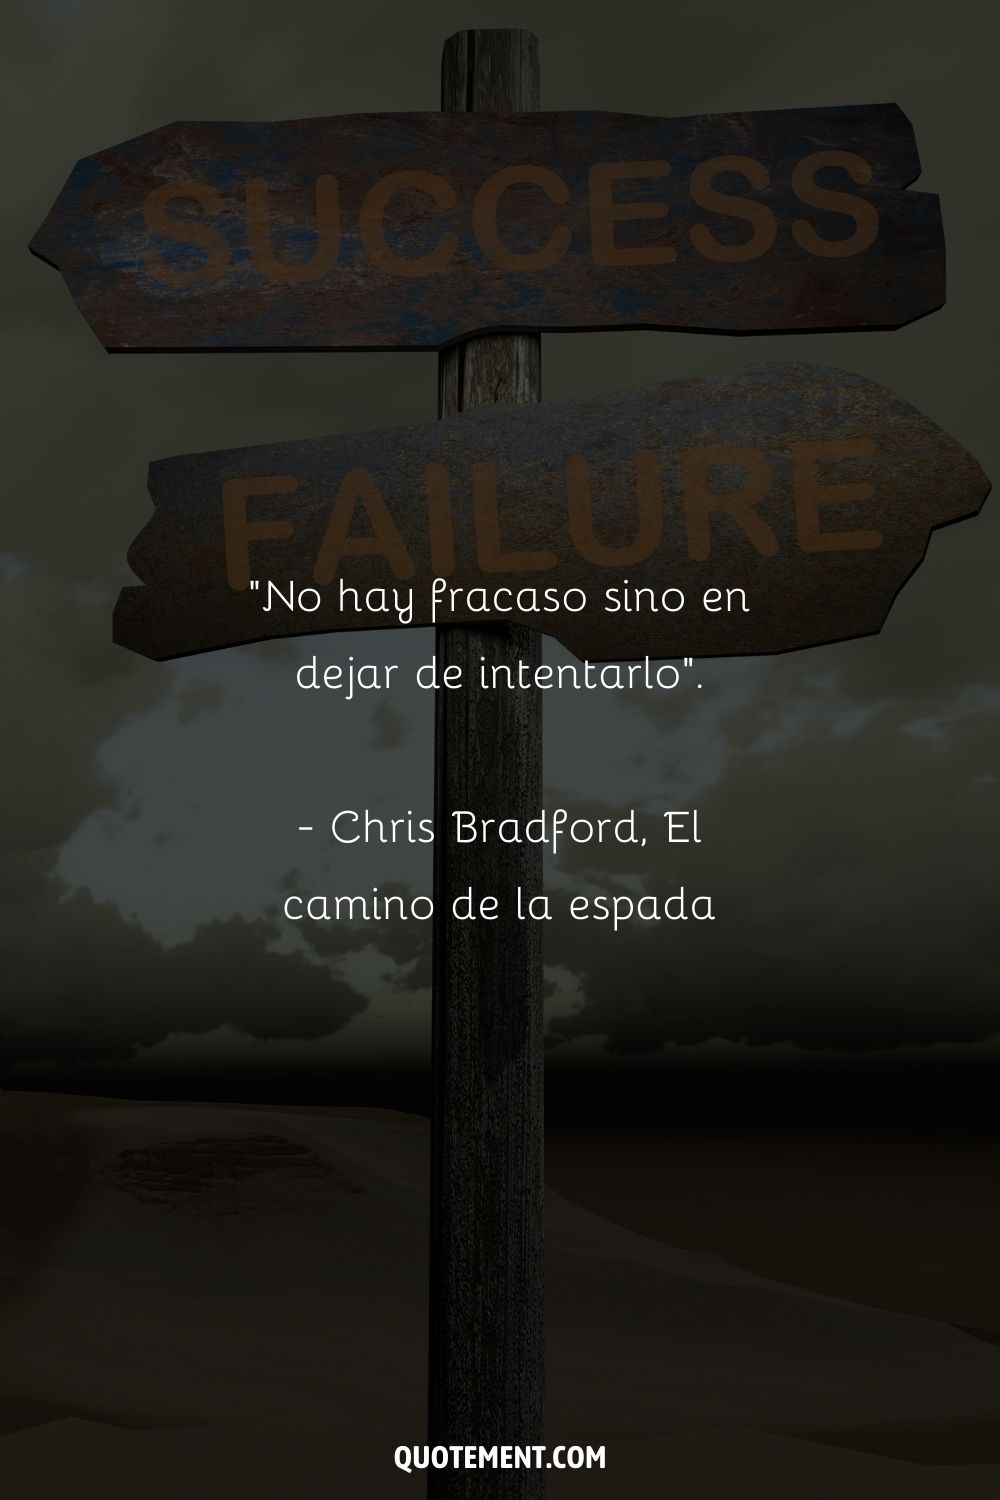 "No hay fracaso excepto en dejar de intentarlo". - Chris Bradford, El camino de la espada